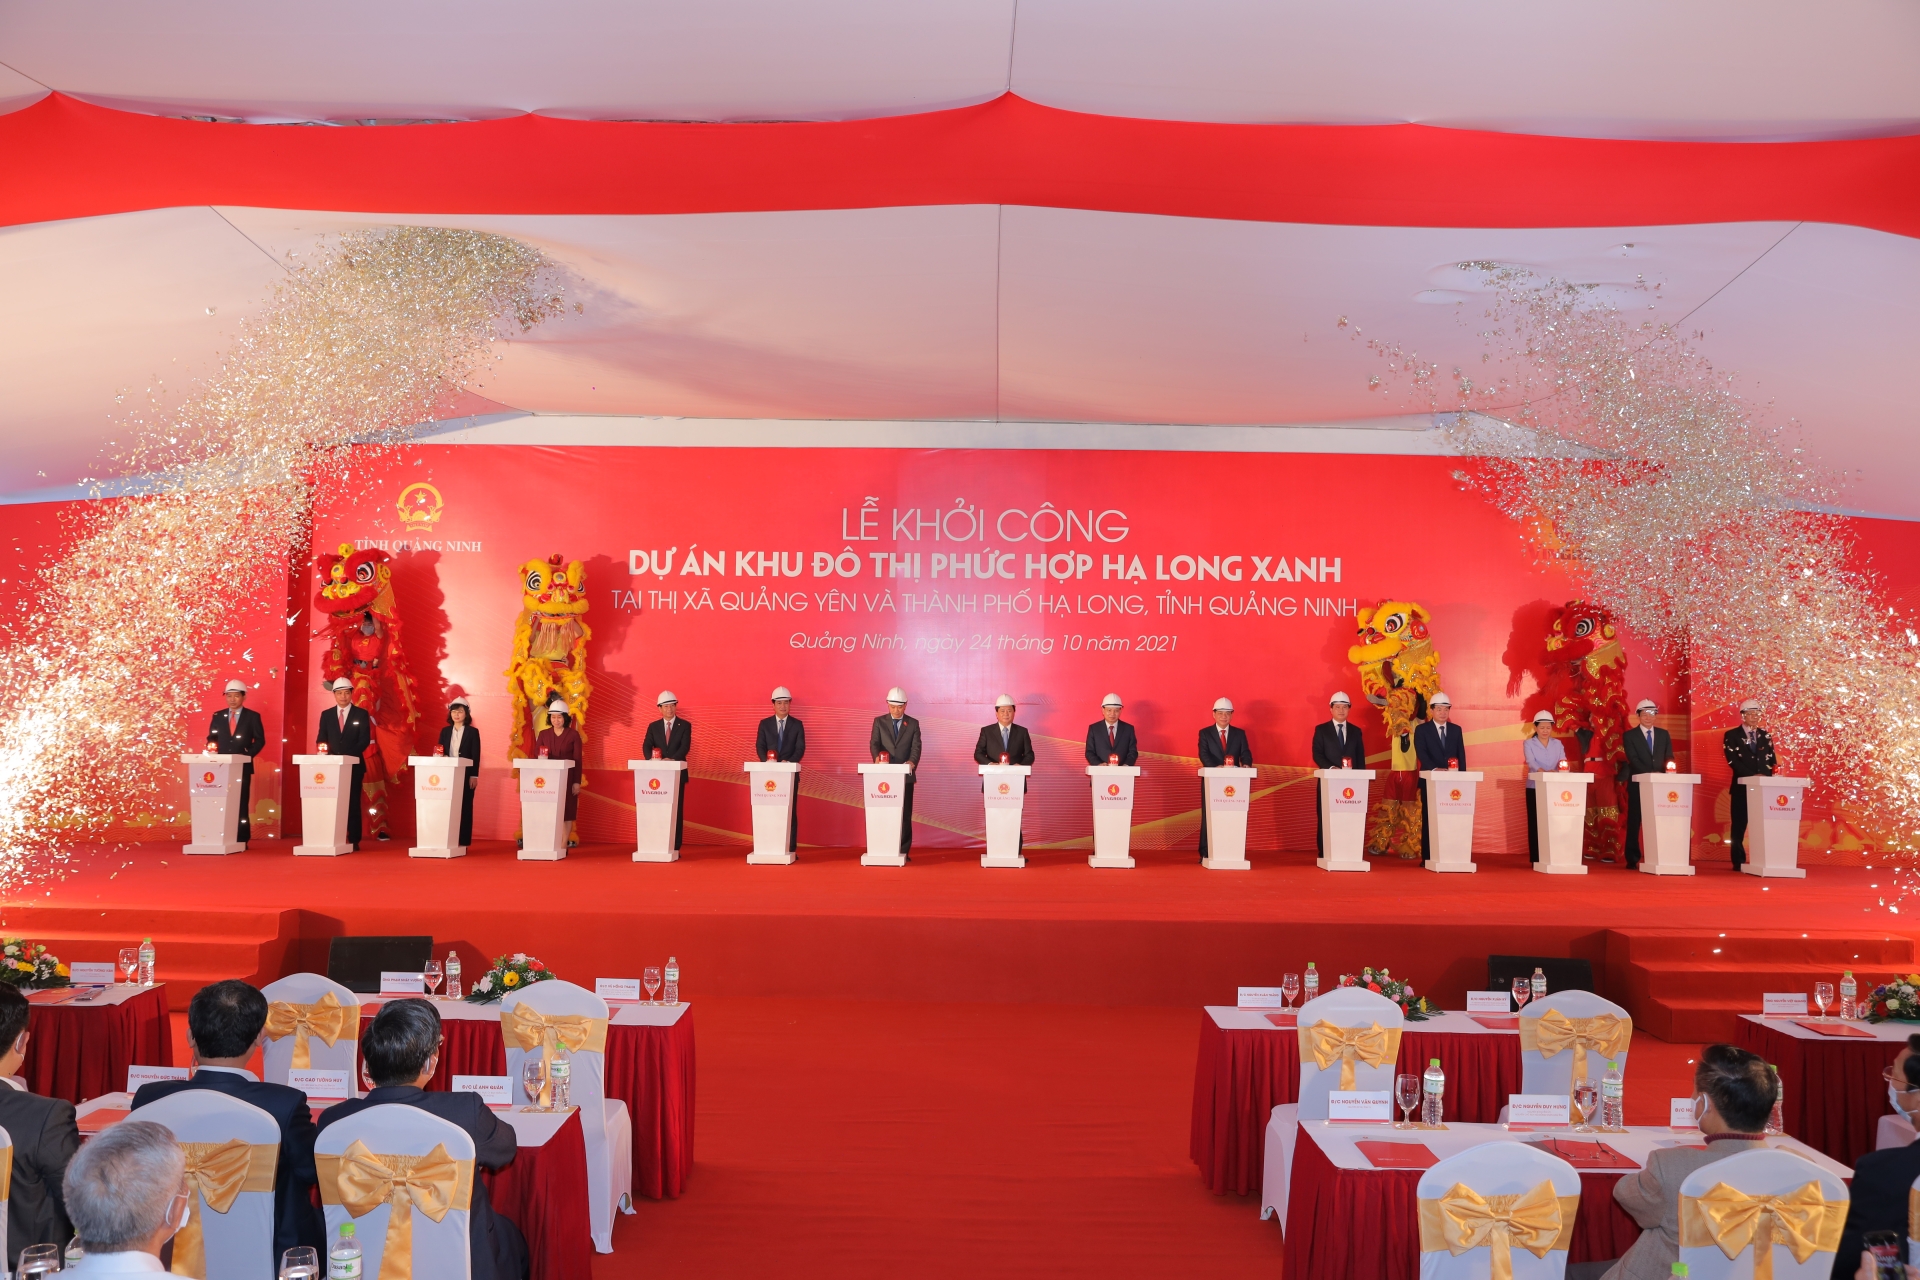 Quảng Ninh khởi công và khởi động liên tiếp 4 siêu dự án trọng điểm lên đến 283.000 tỷ đồng